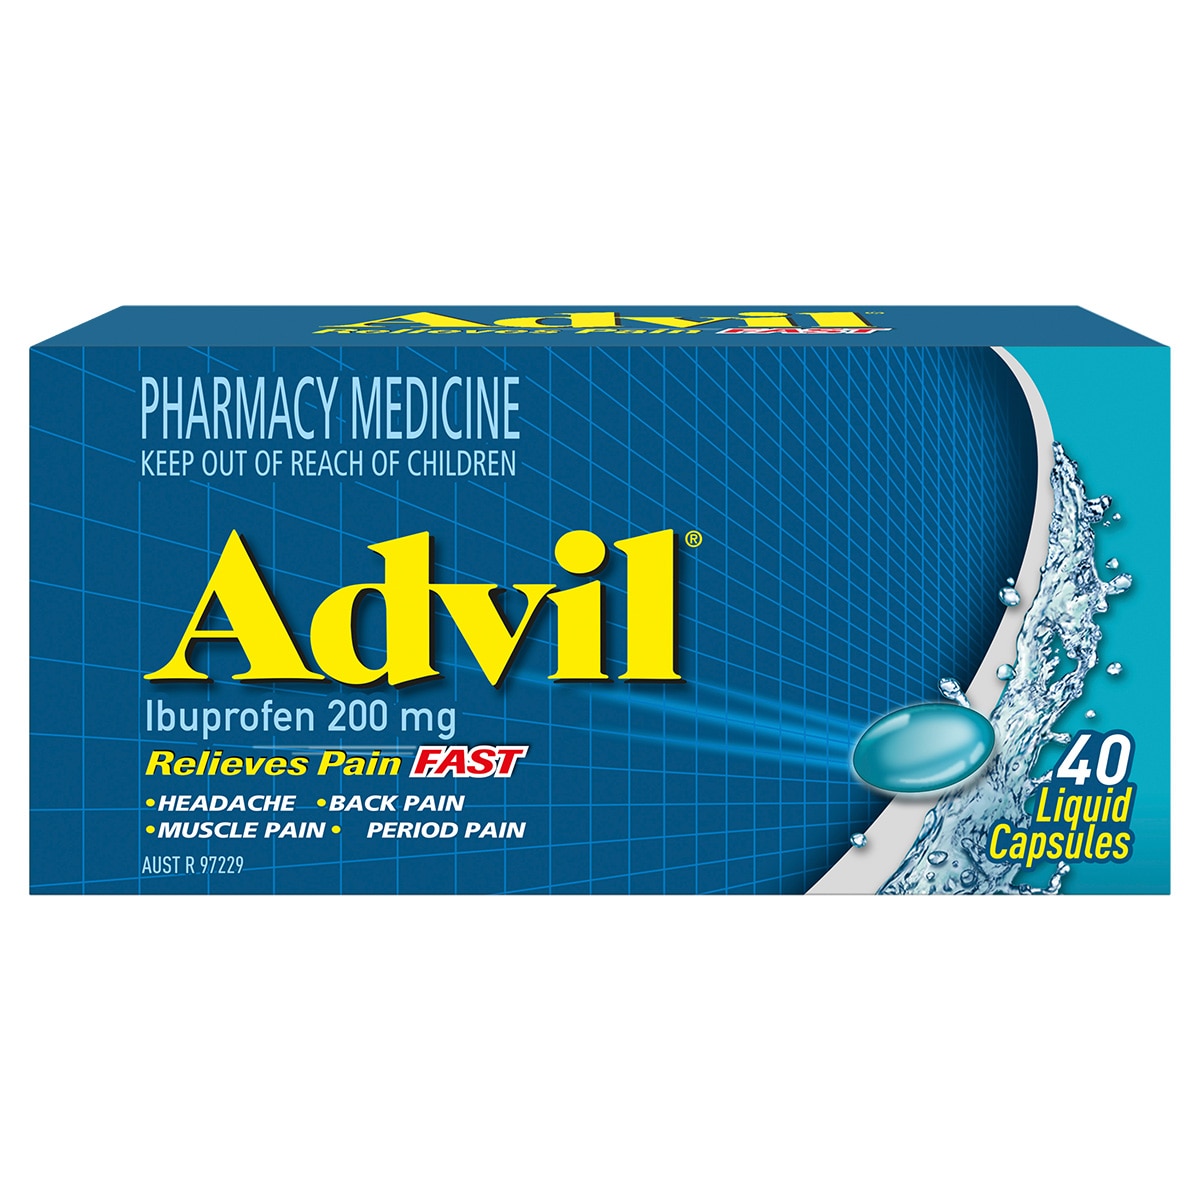 Advil Fast Pain Relief 40 Liquid Capsules